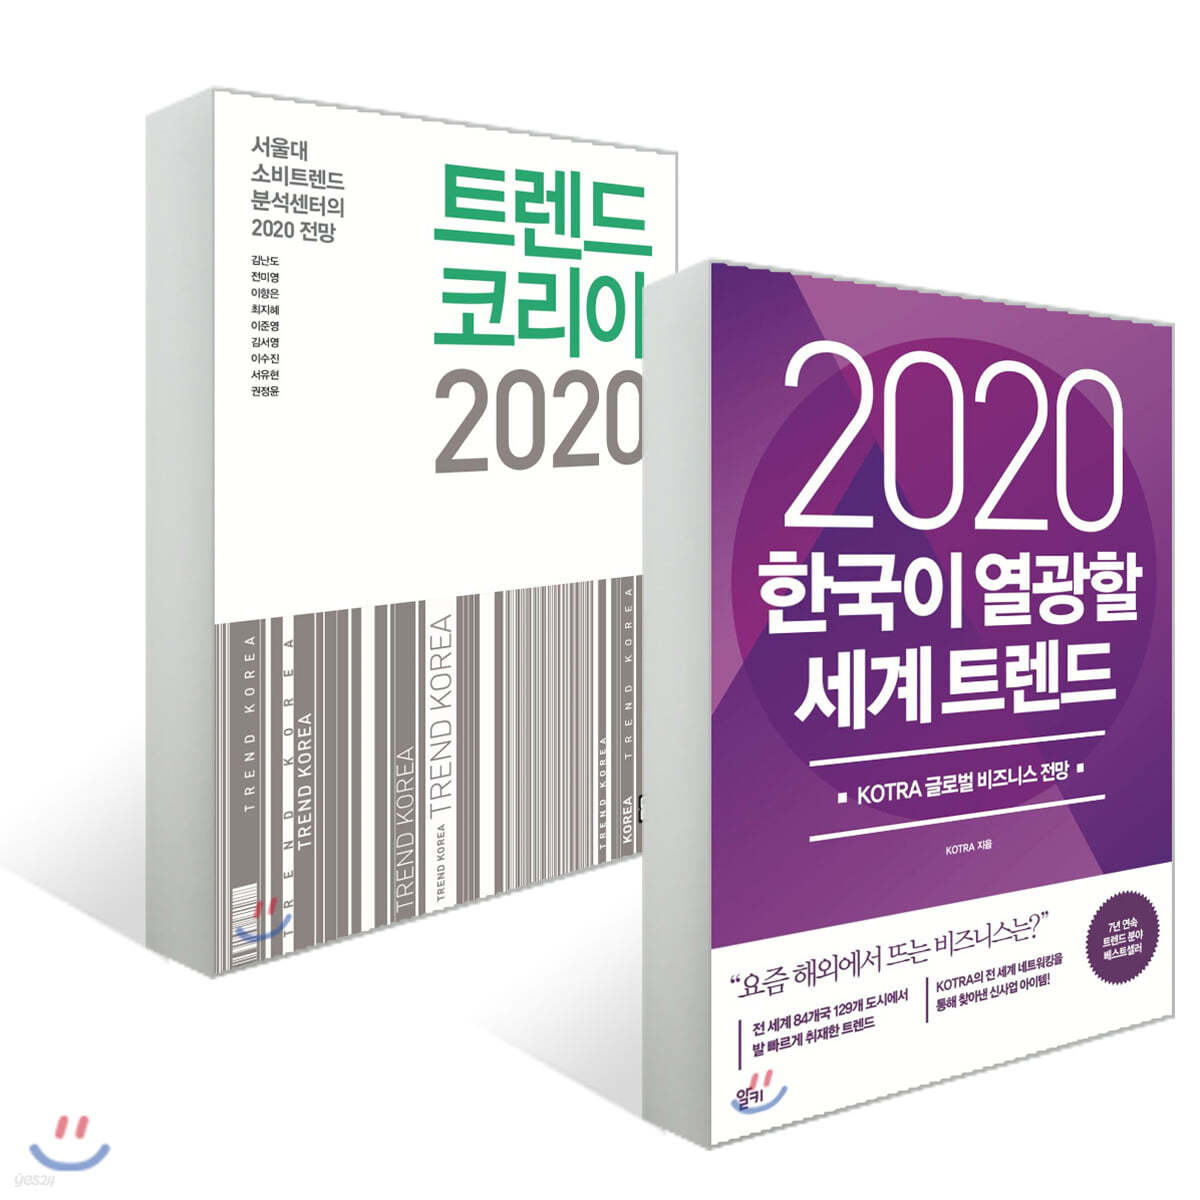 트렌드 코리아 2020 + 2020 한국이 열광할 세계 트렌드